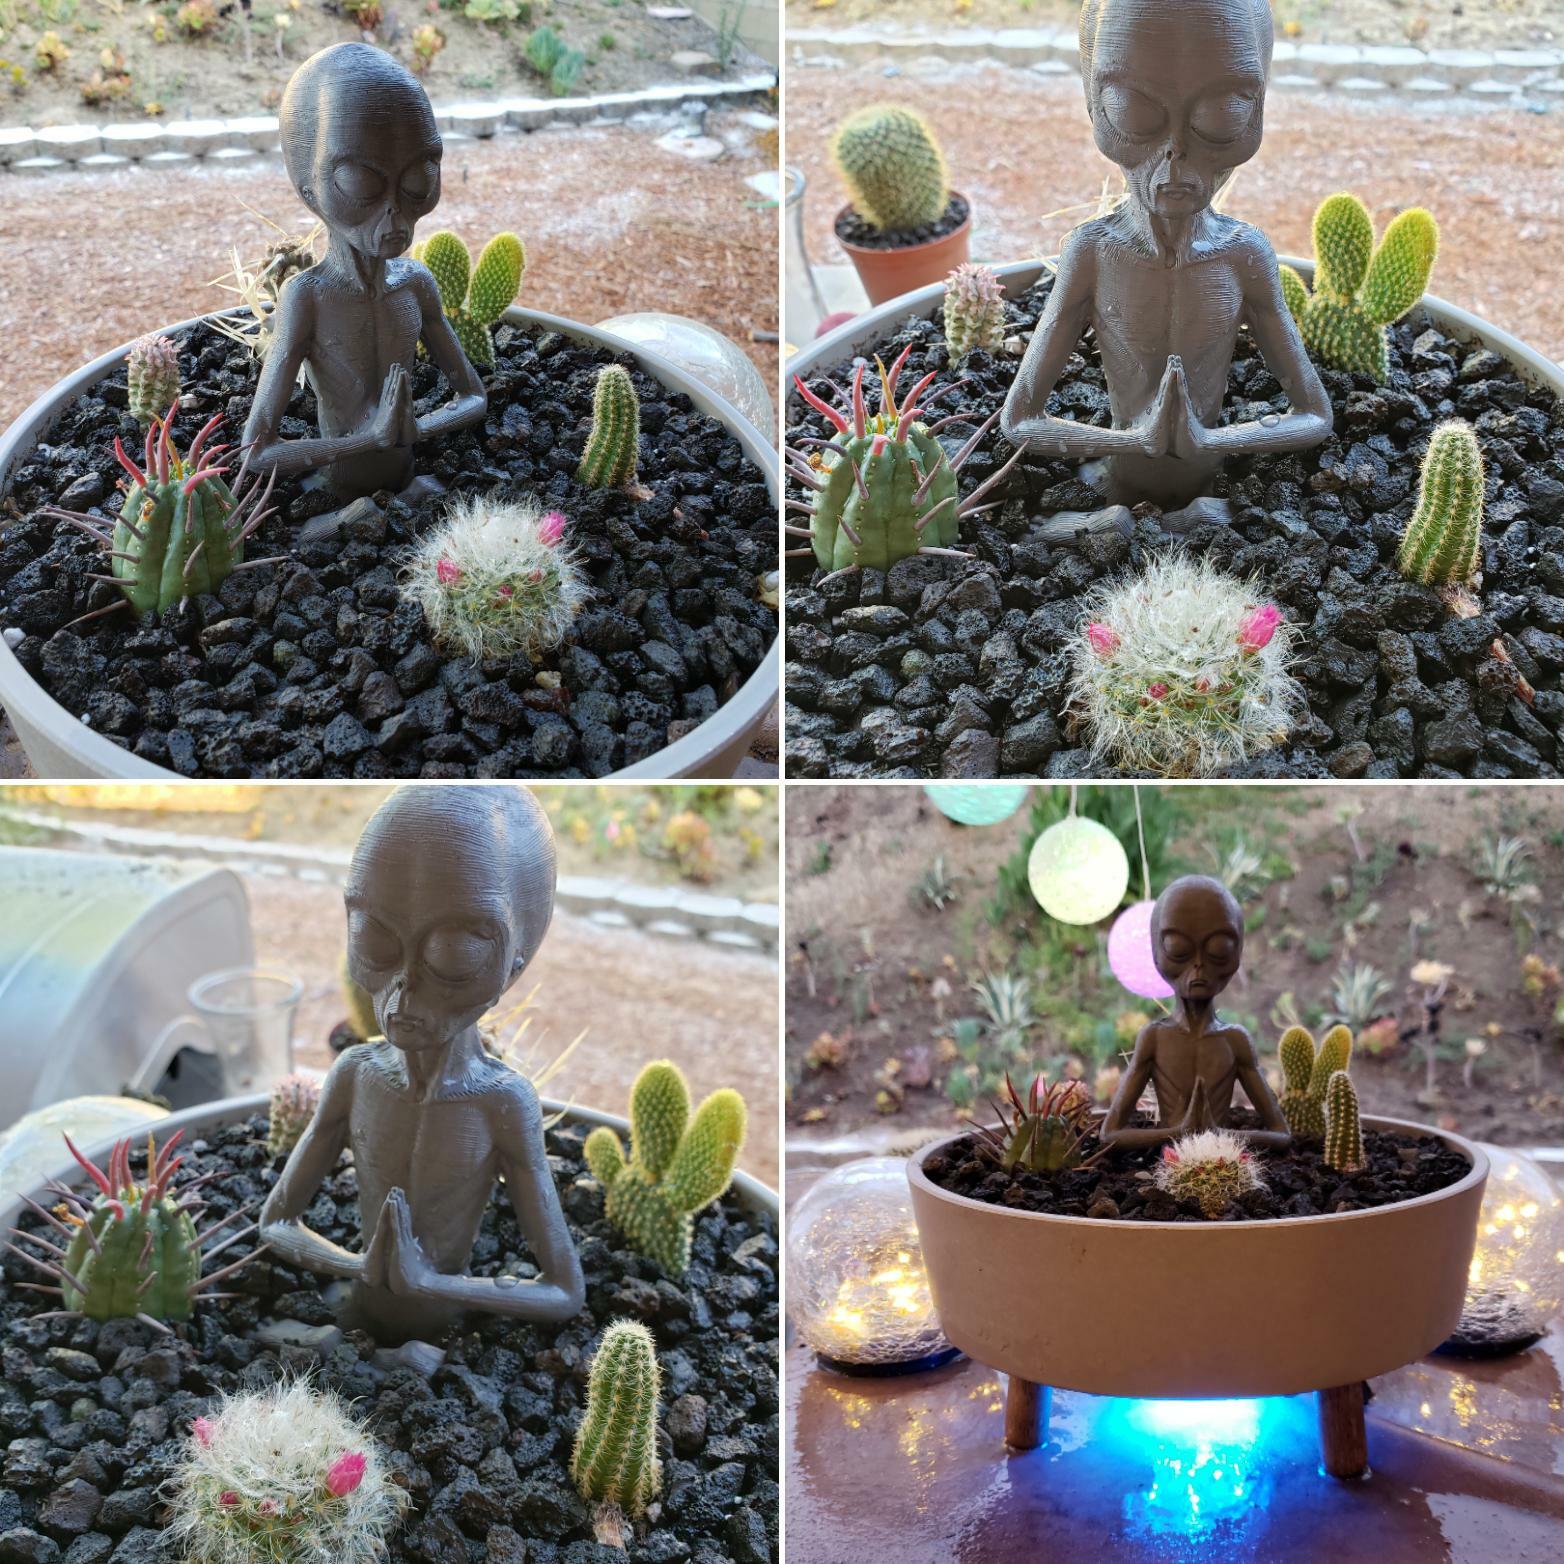 Mon mari appelle les cactus des bébés extraterrestres, alors j’ai pris ceux qu’il a choisis et je les ai installés pour ses préférés.